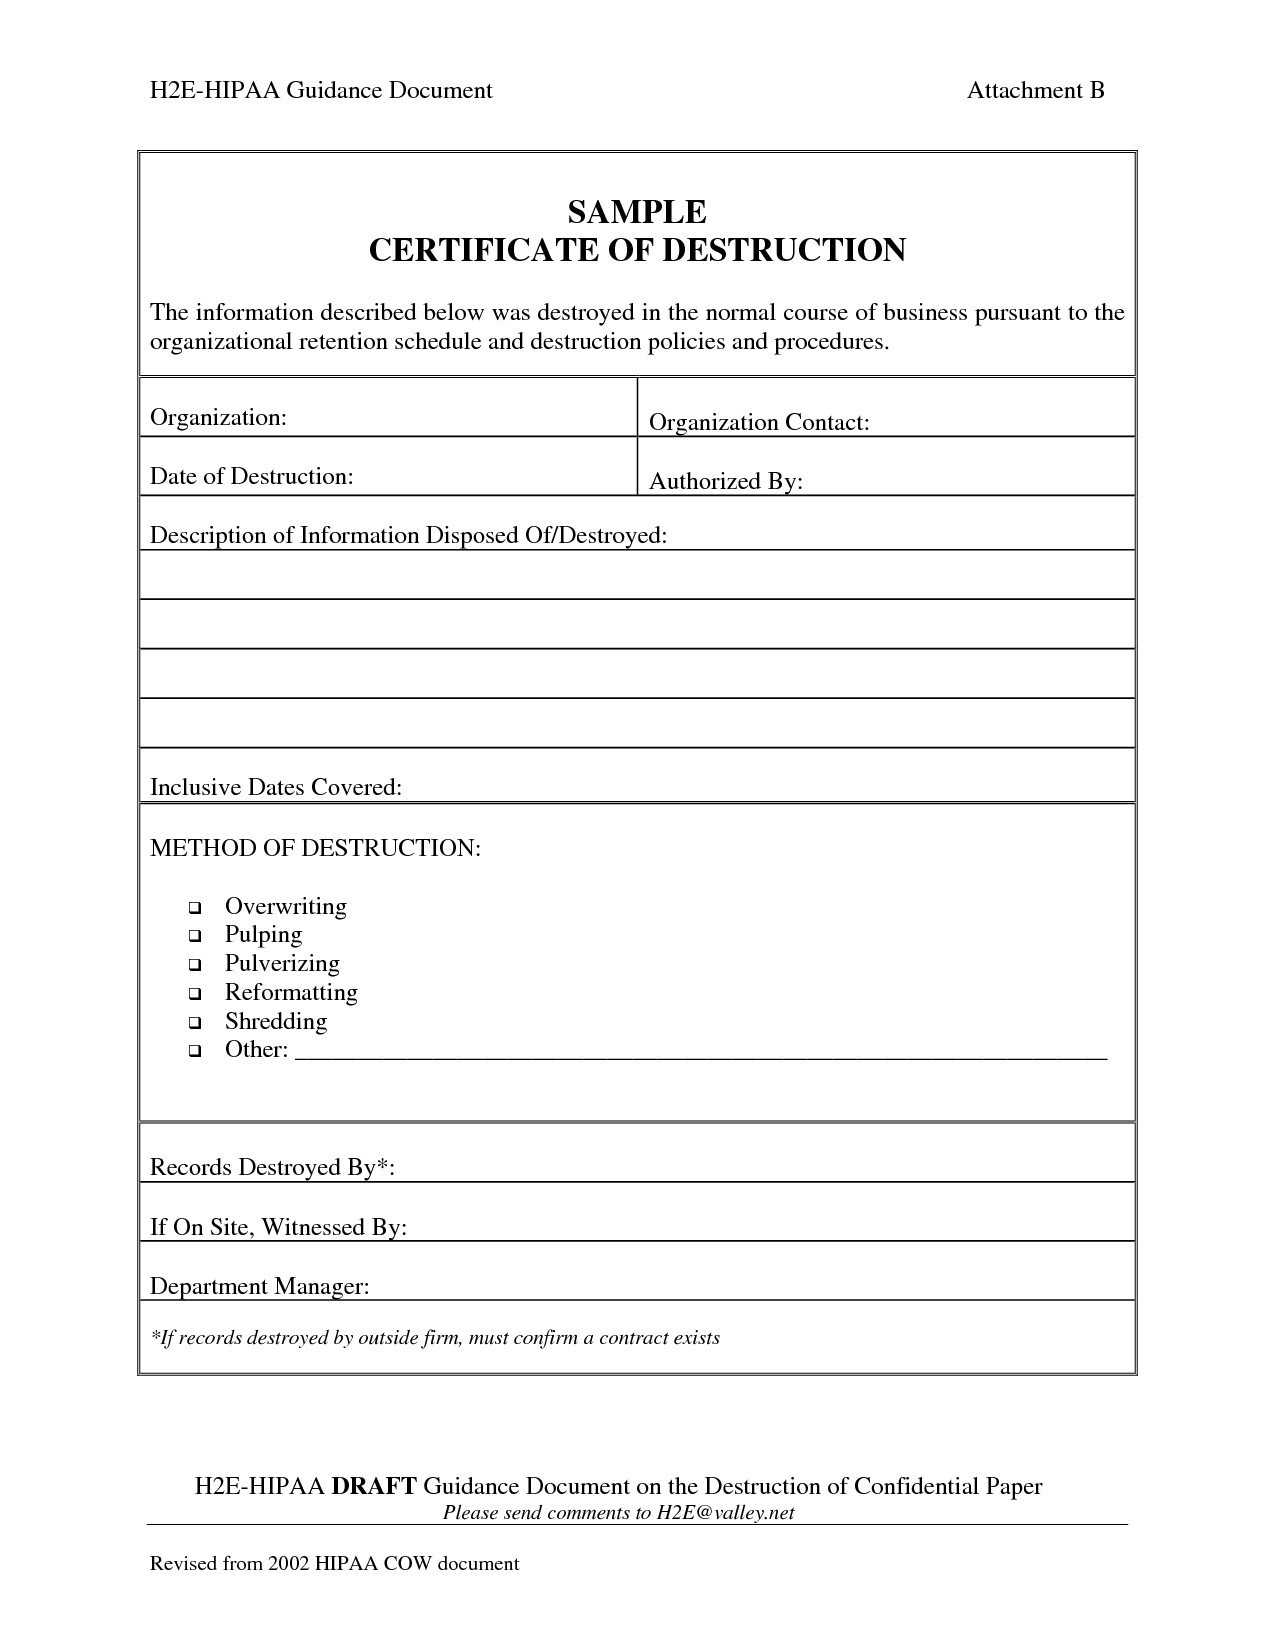 009 Certificate Of Destruction Template Exceptional Ideas Intended For Destruction Certificate Template